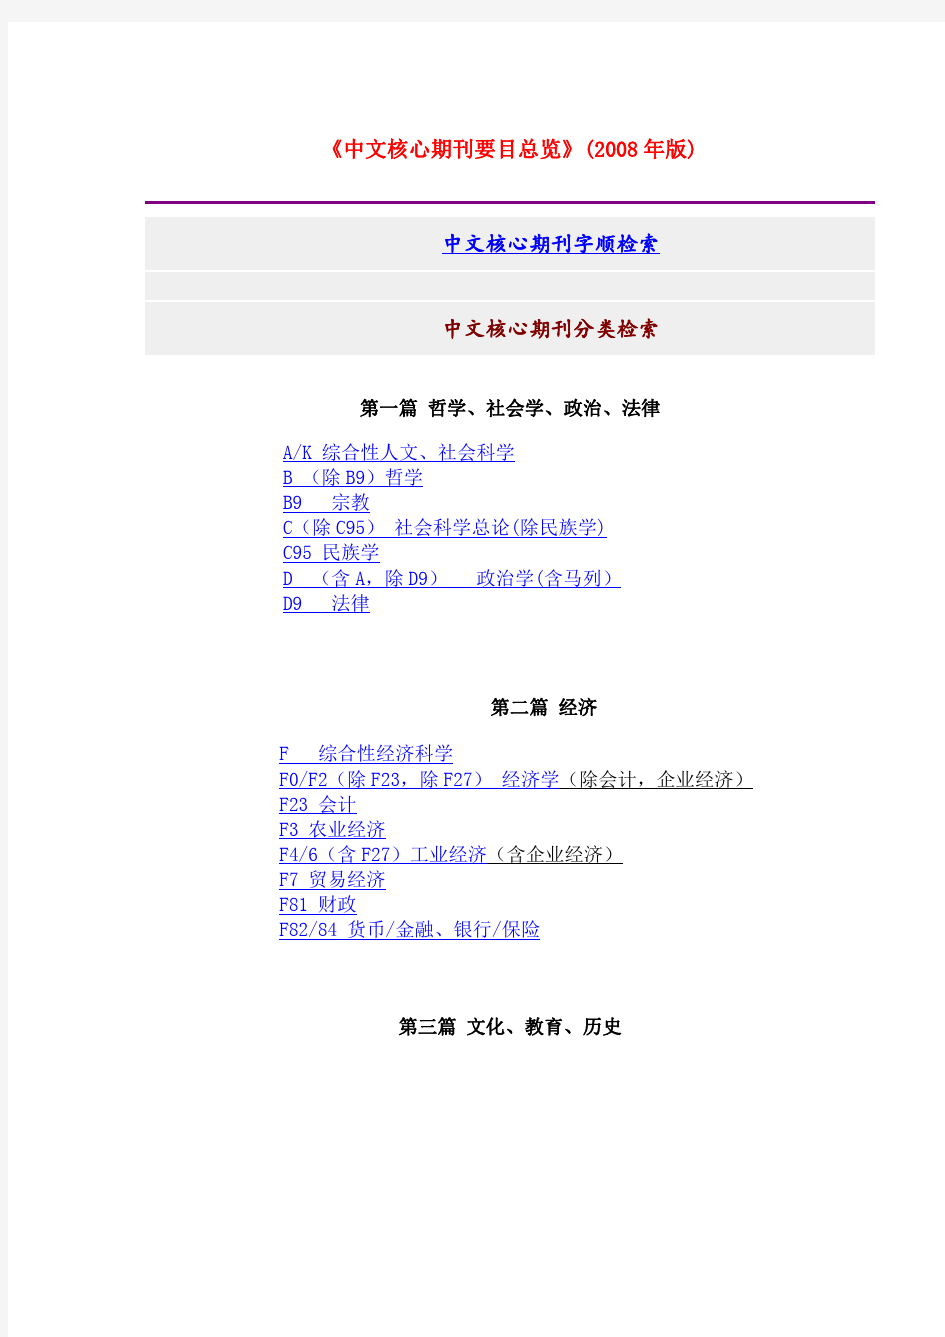 《中文核心期刊要目总览》(2008年版)